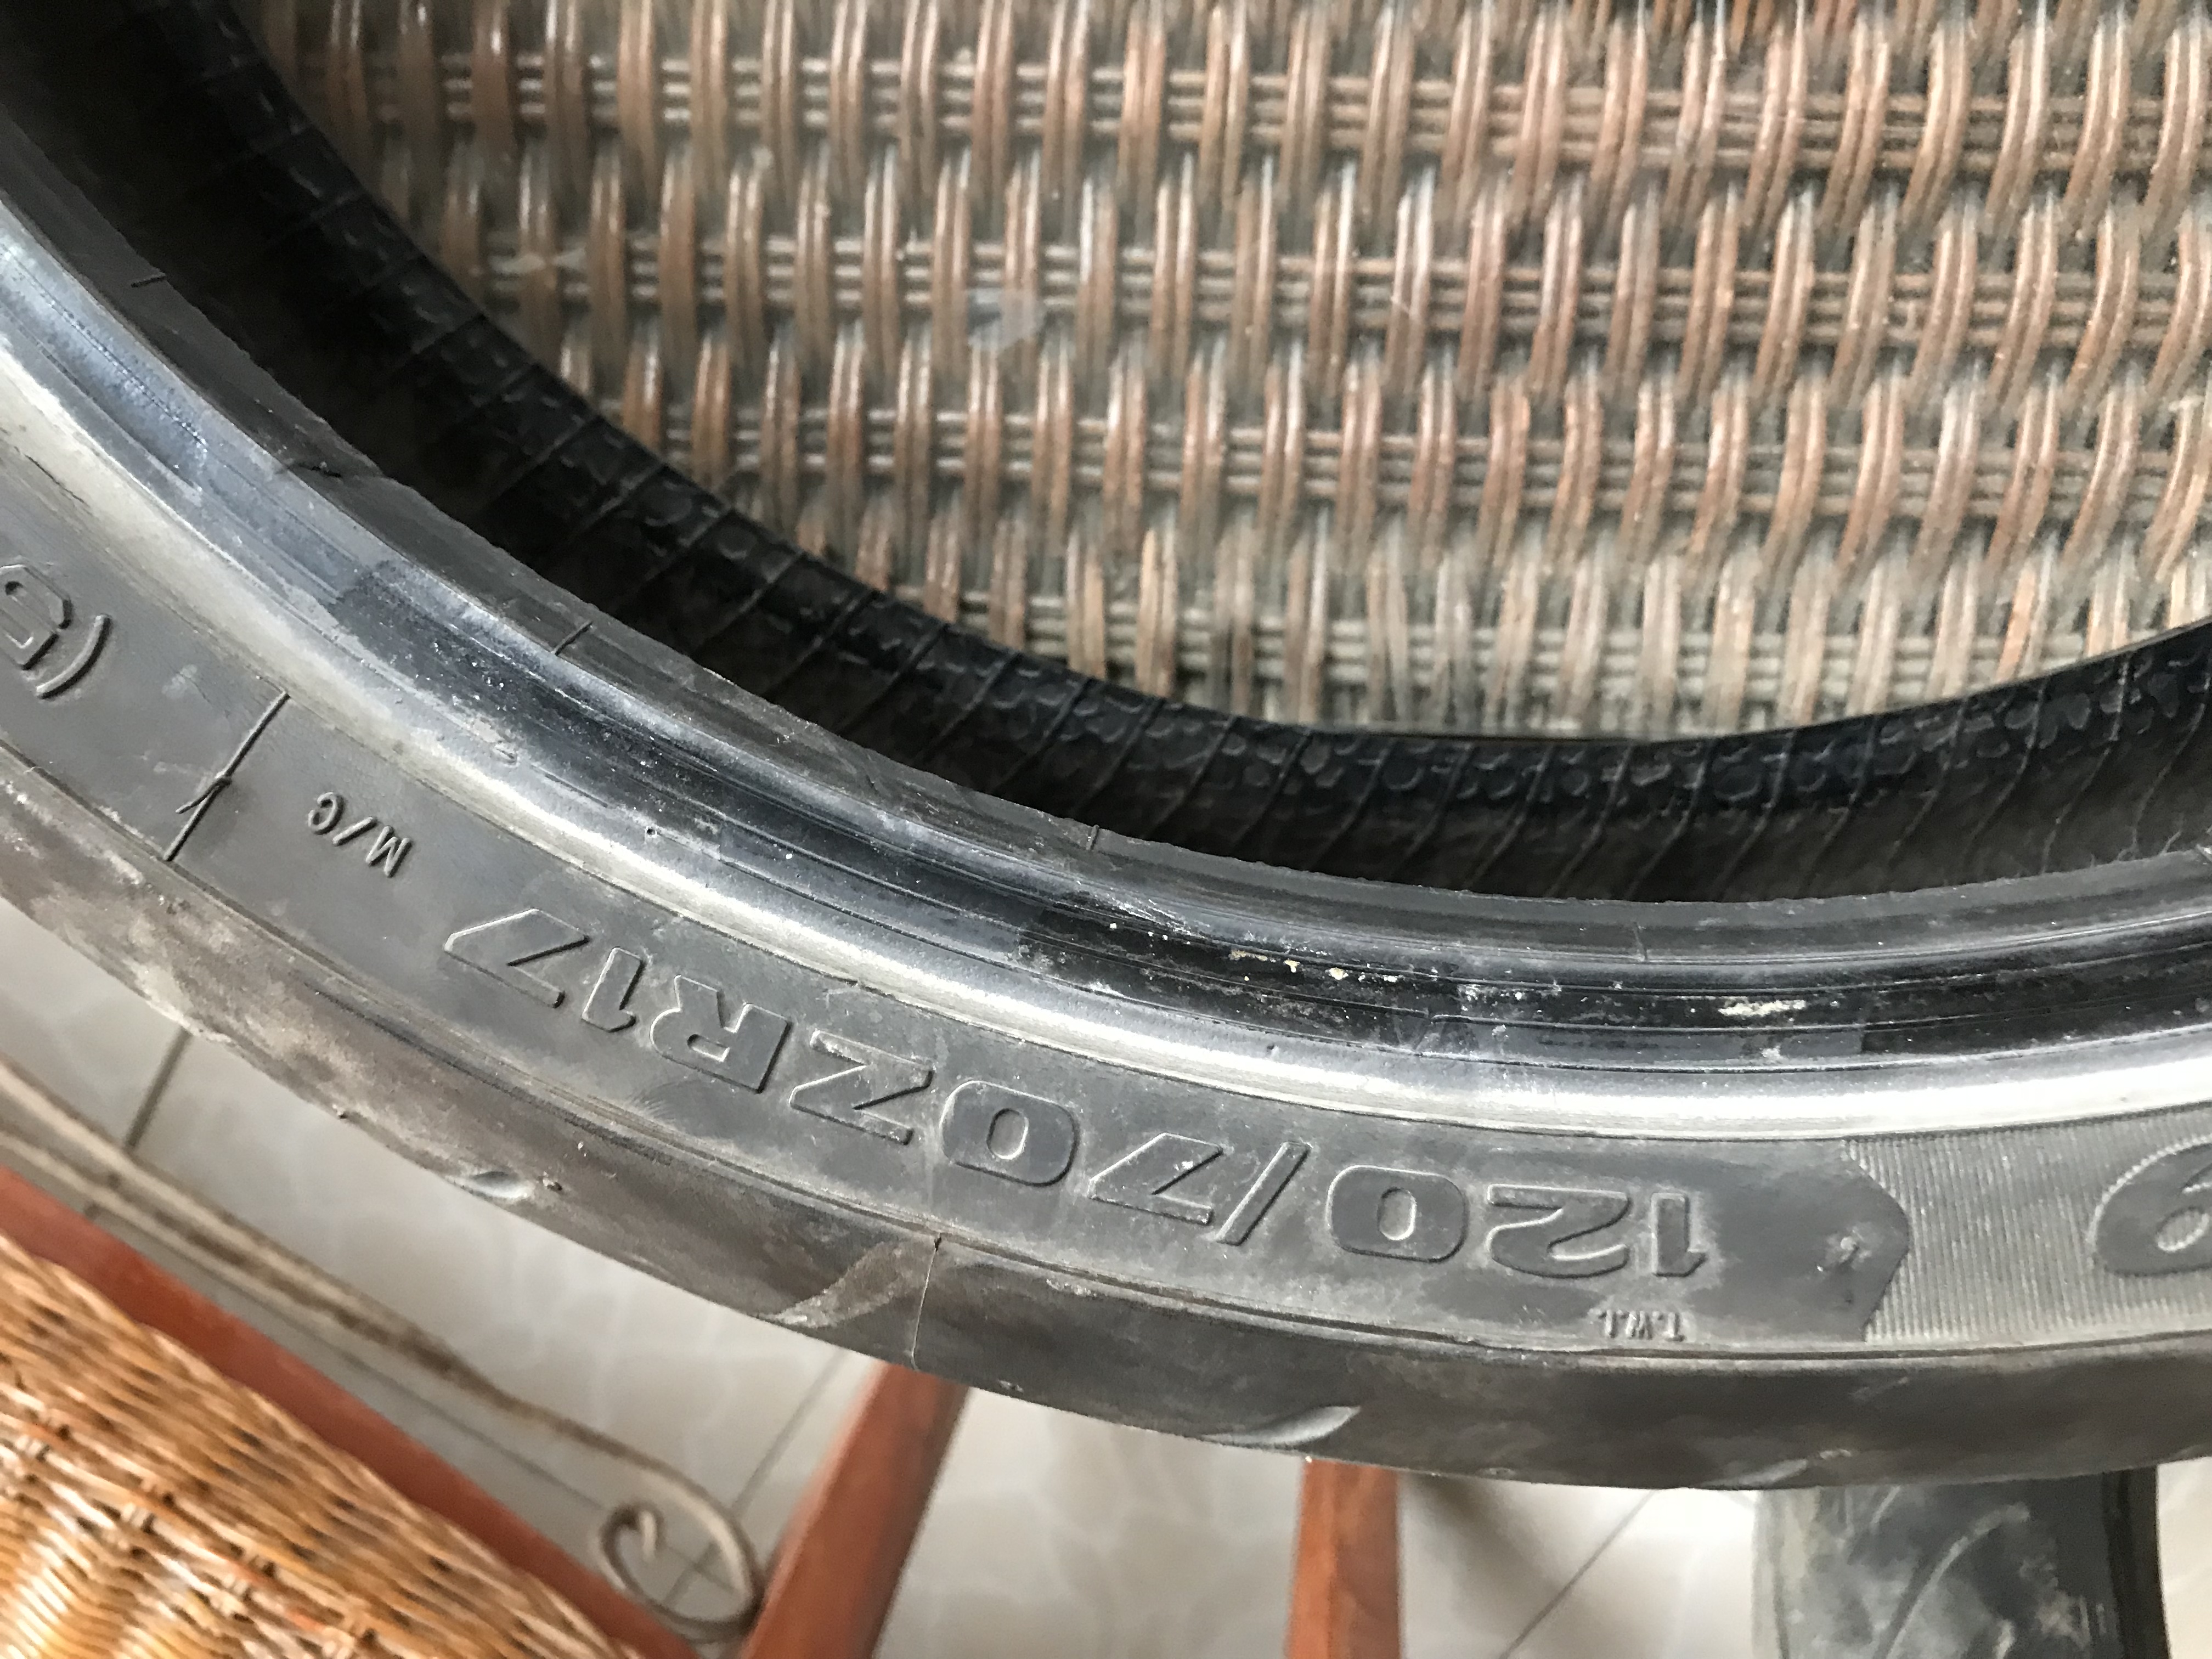 Avon 3D -  Sportbike Tire - Front tire